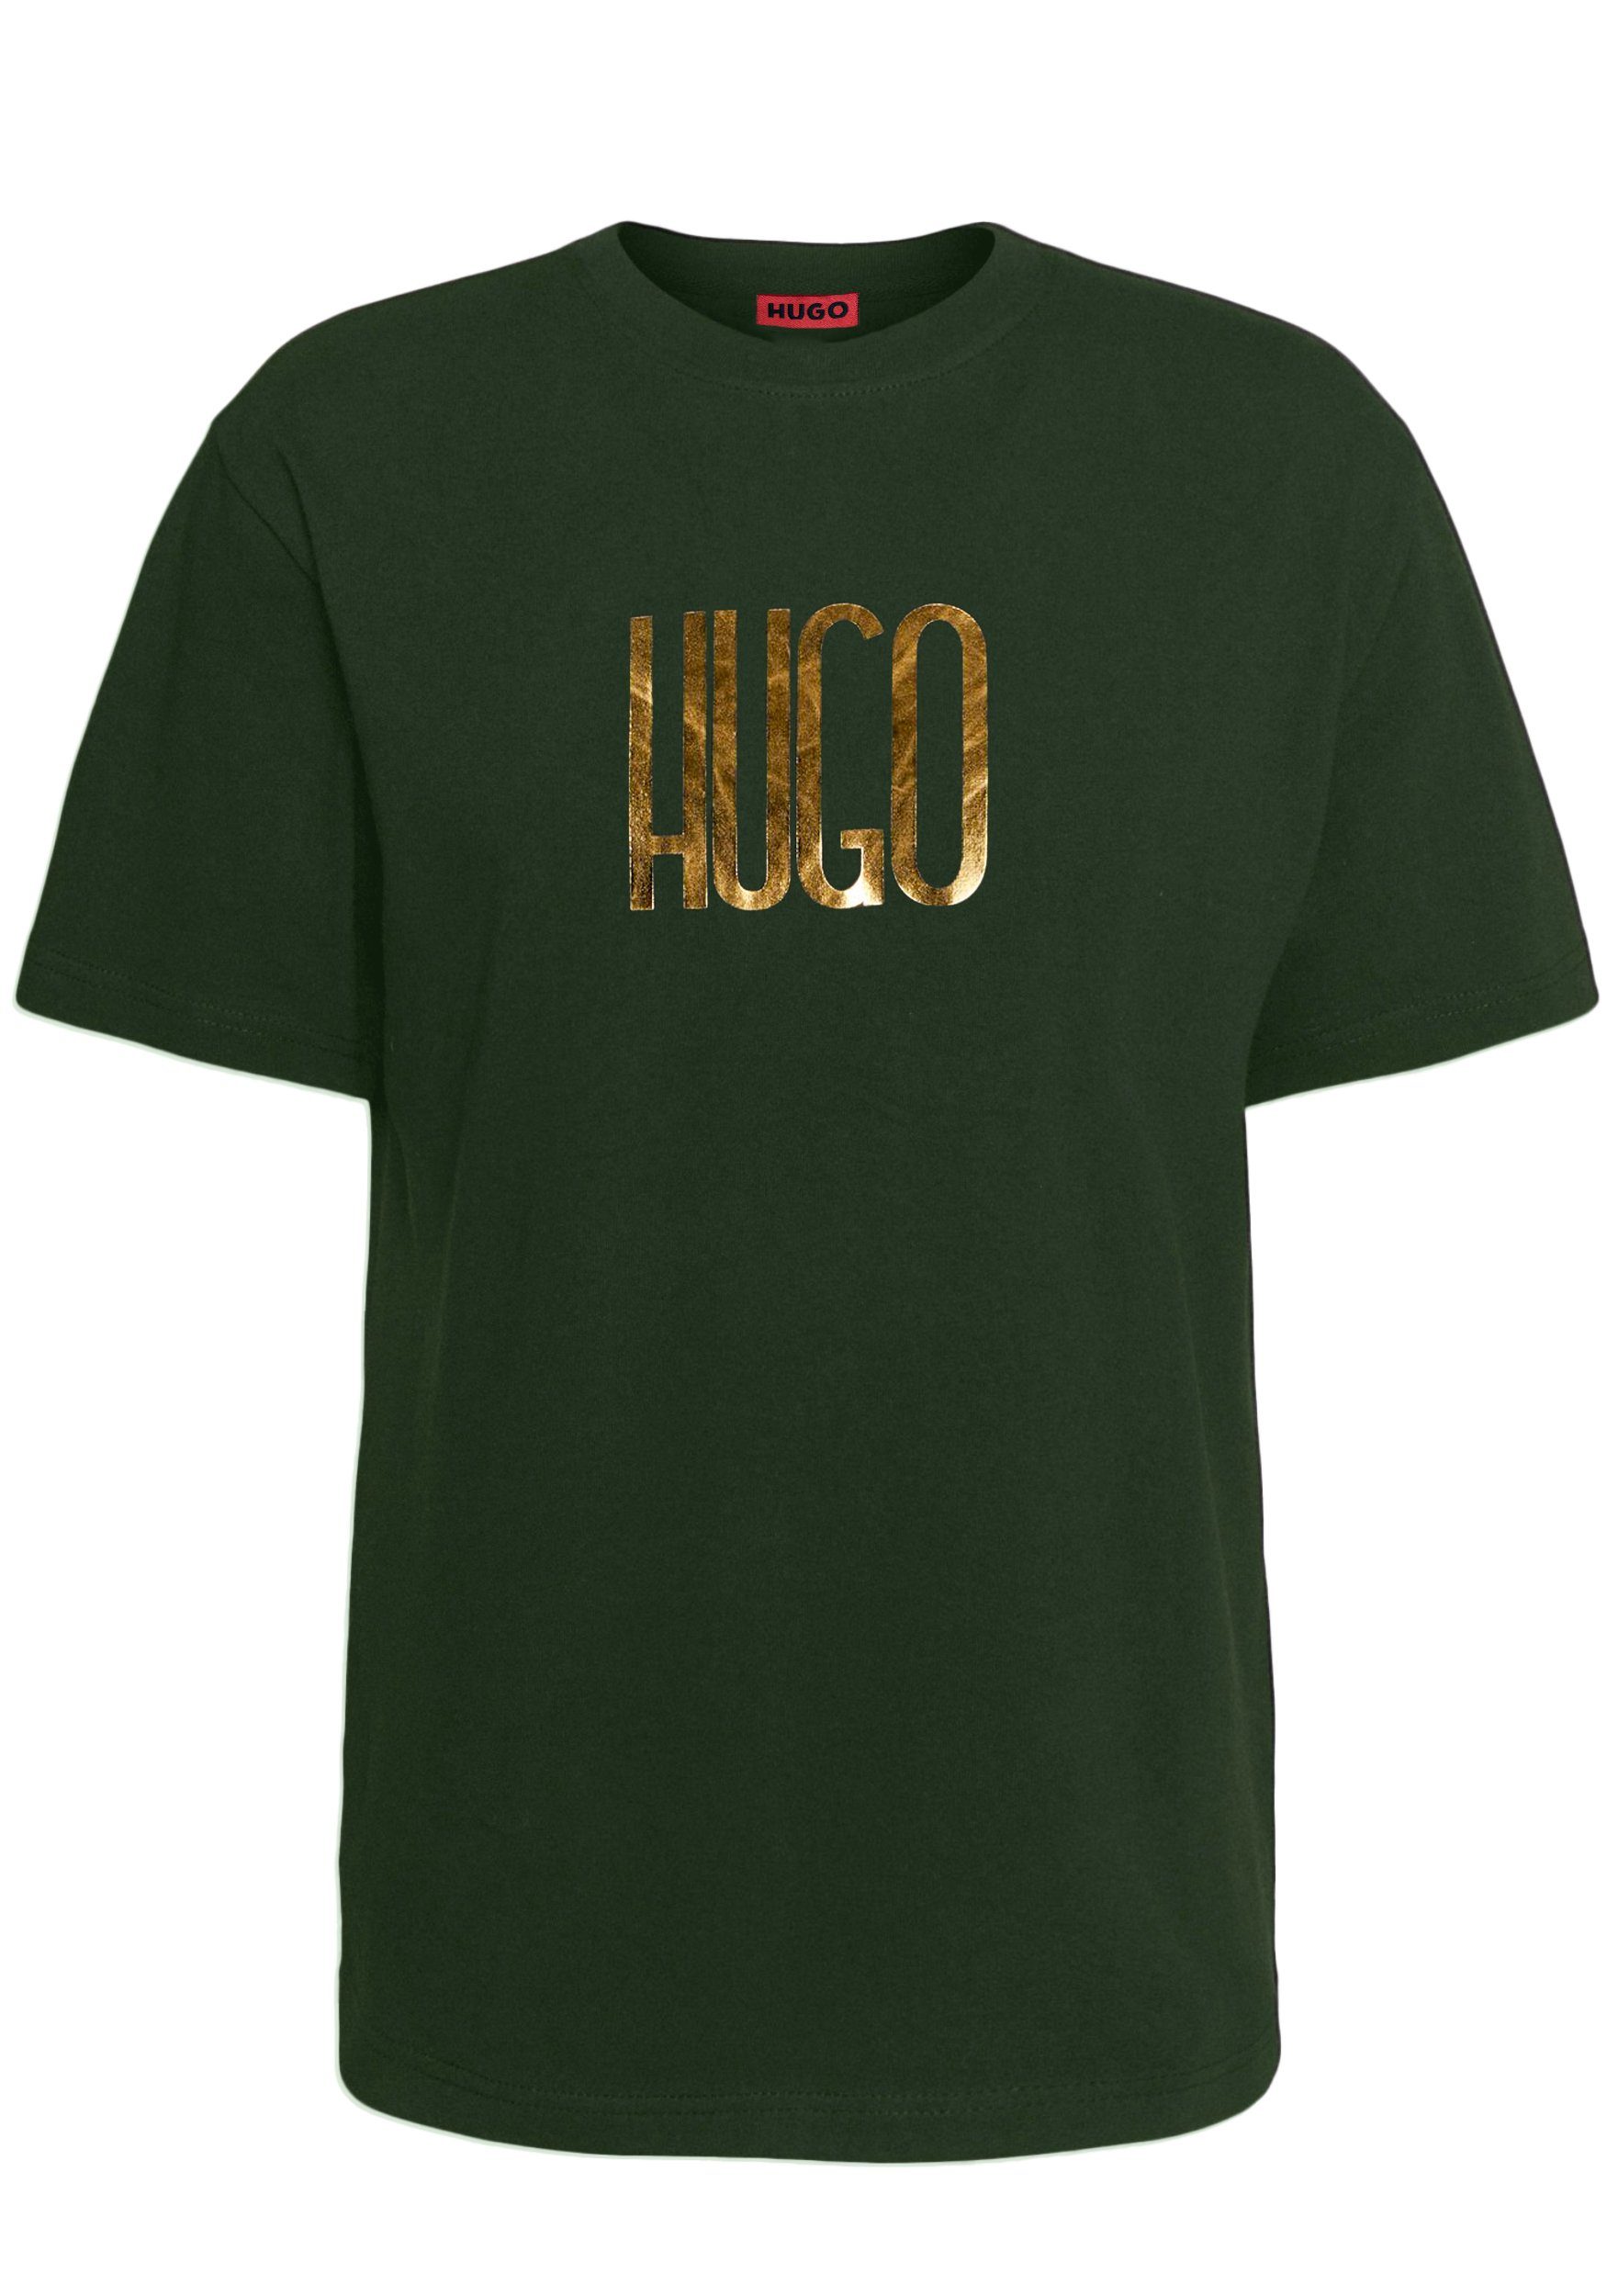 Brust T-Shirt Dartlap HUGO Hugo der auf Print Logo Grün